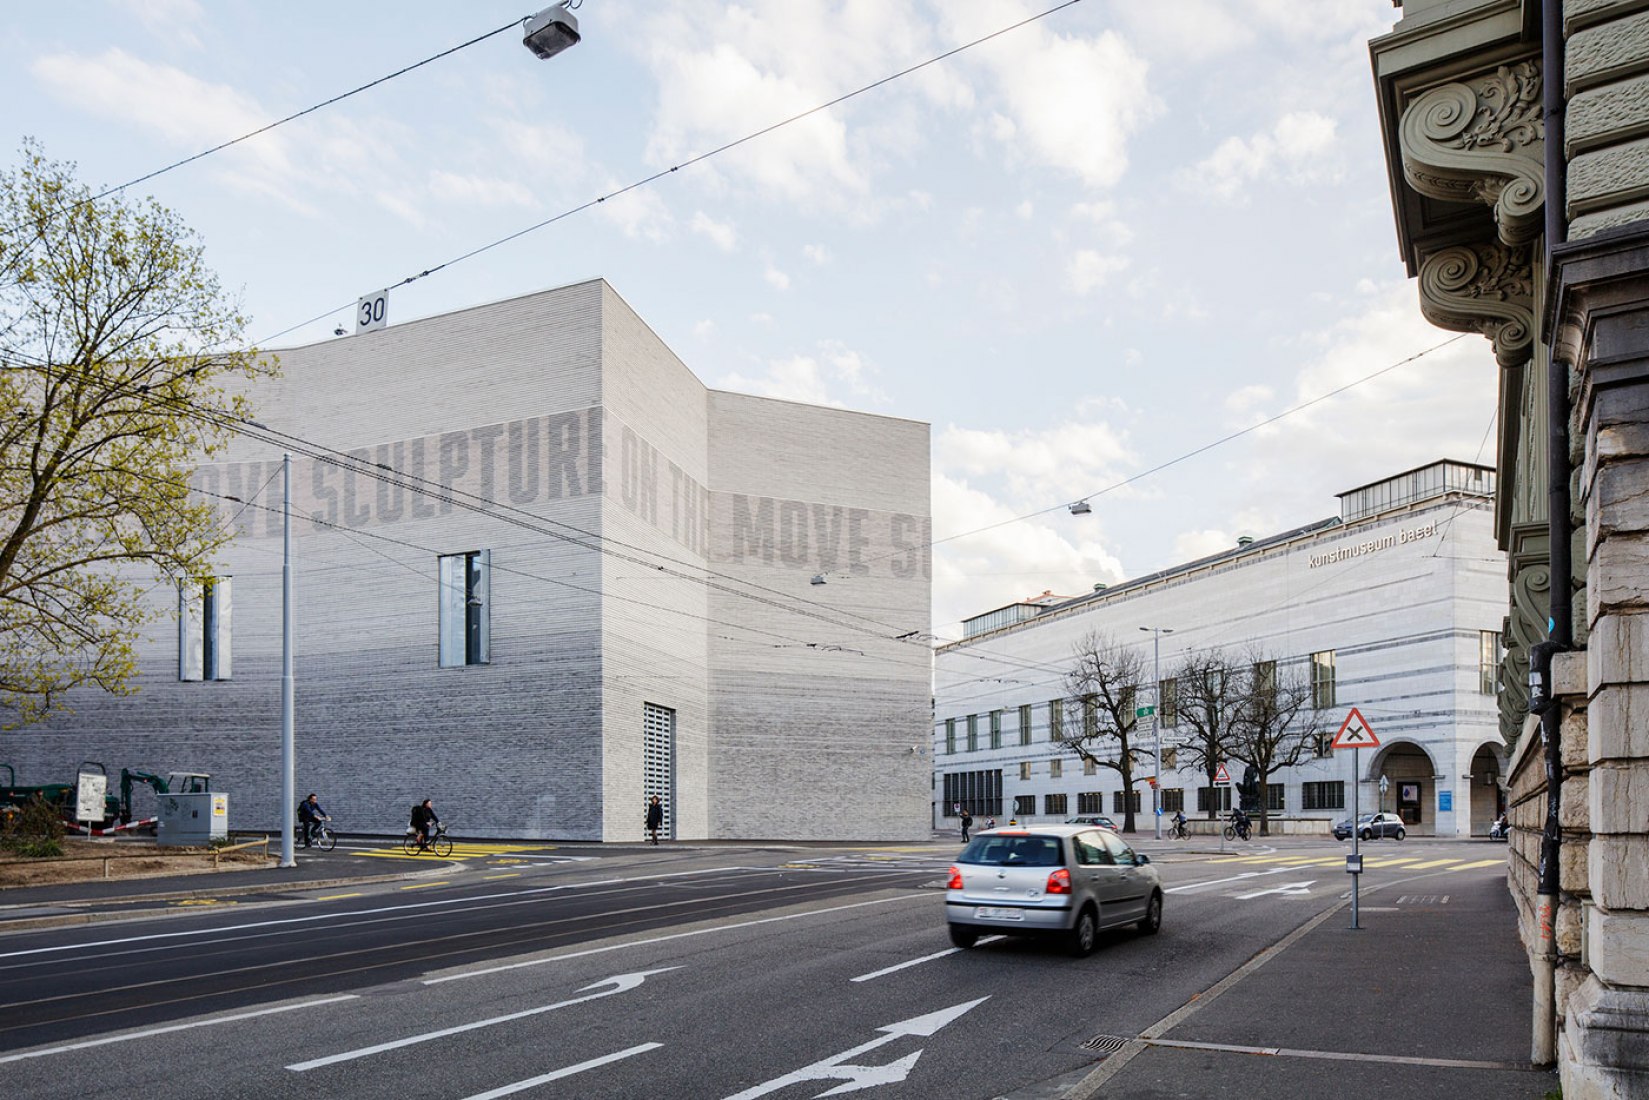 Vista general del nuevo Kunstmuseum de Basilea por iart. Fotografía © Derek Li Wan Po